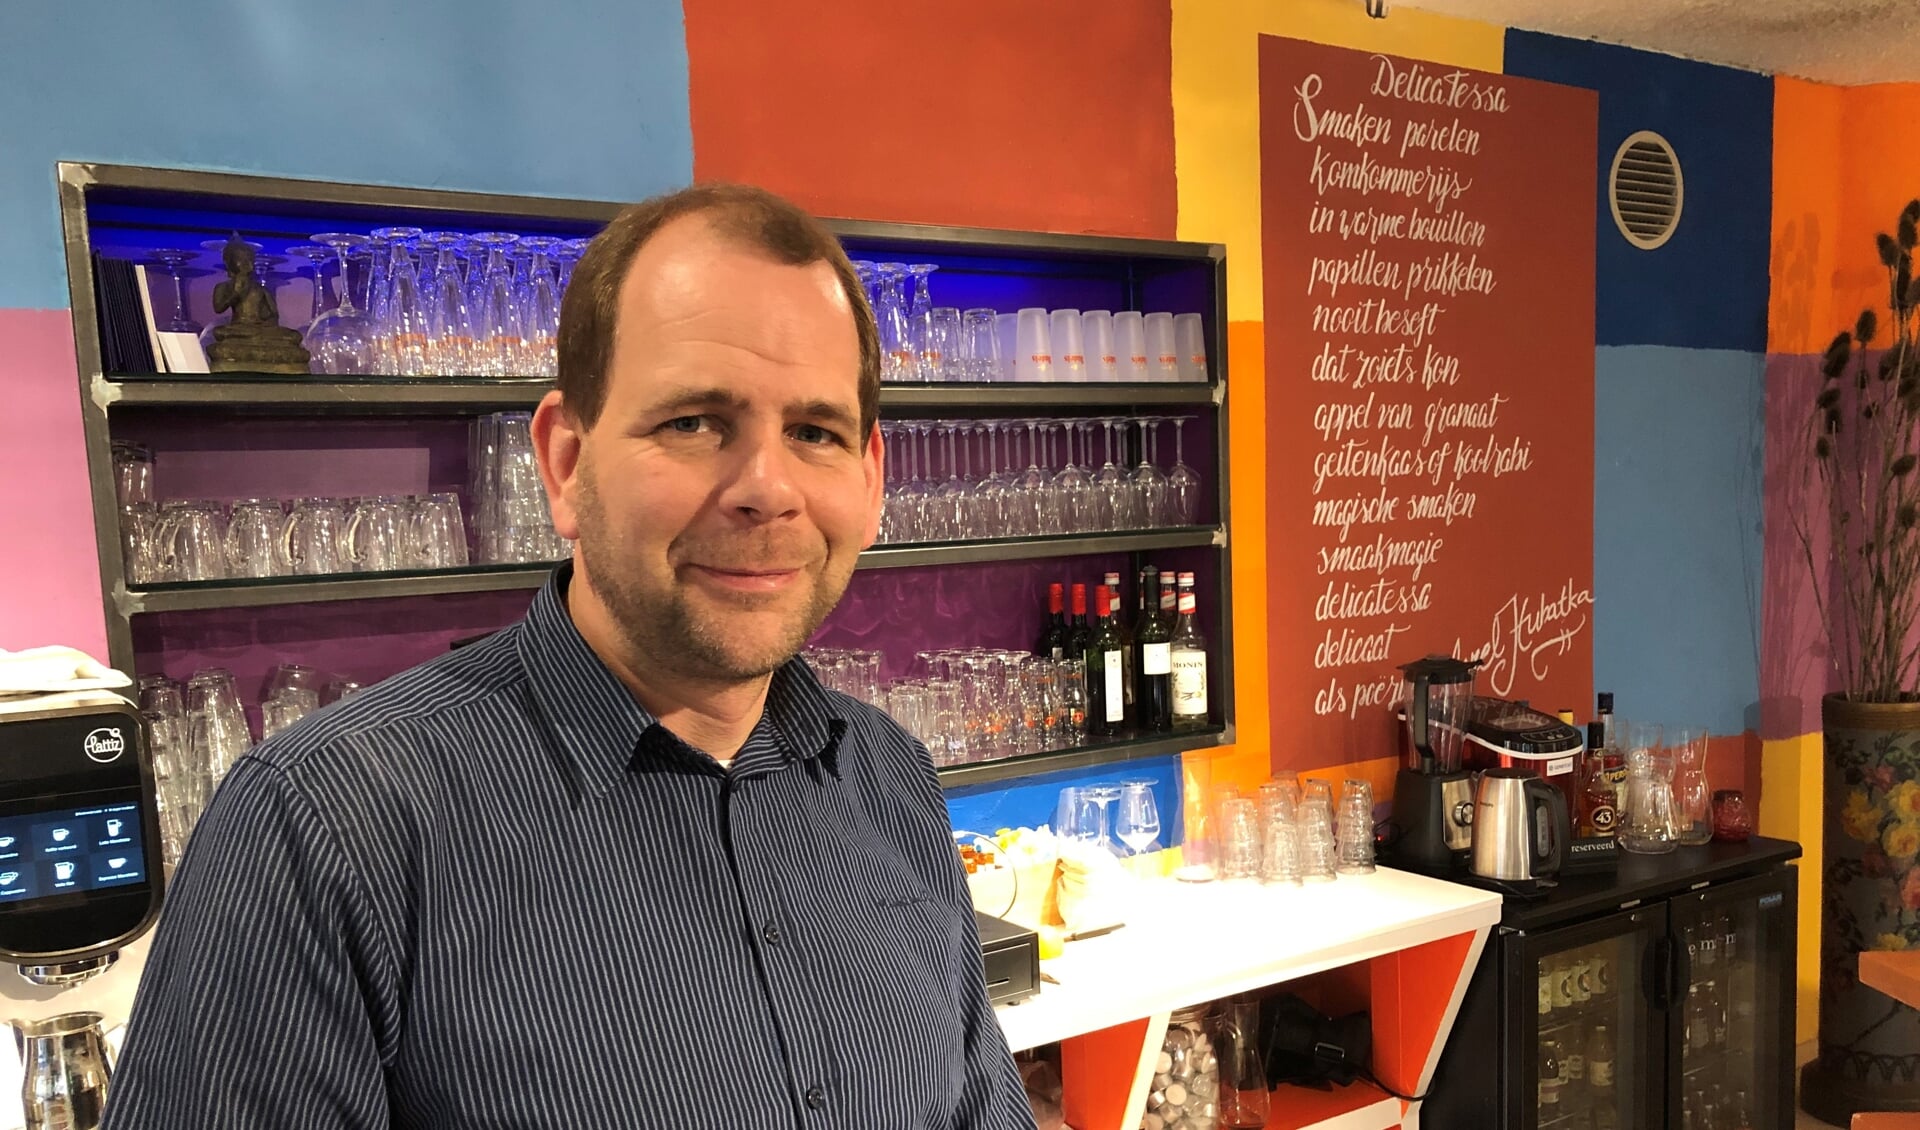 Gijs Peteroff achter de bar van zijn bijna drie maanden geleden geopende Genietcafé Emerpark:  “We gaan het zeker redden!”. Foto: Eric Klop